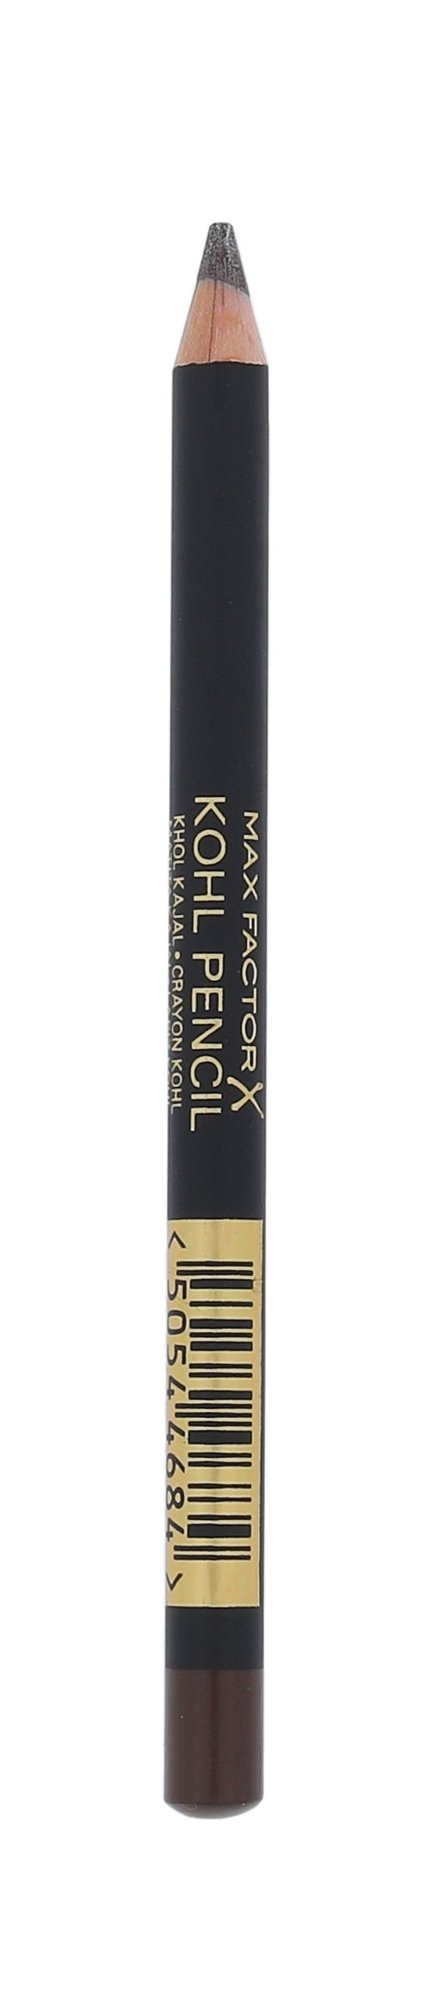 Max Factor Kohl Pencil 3,5g akių pieštukas